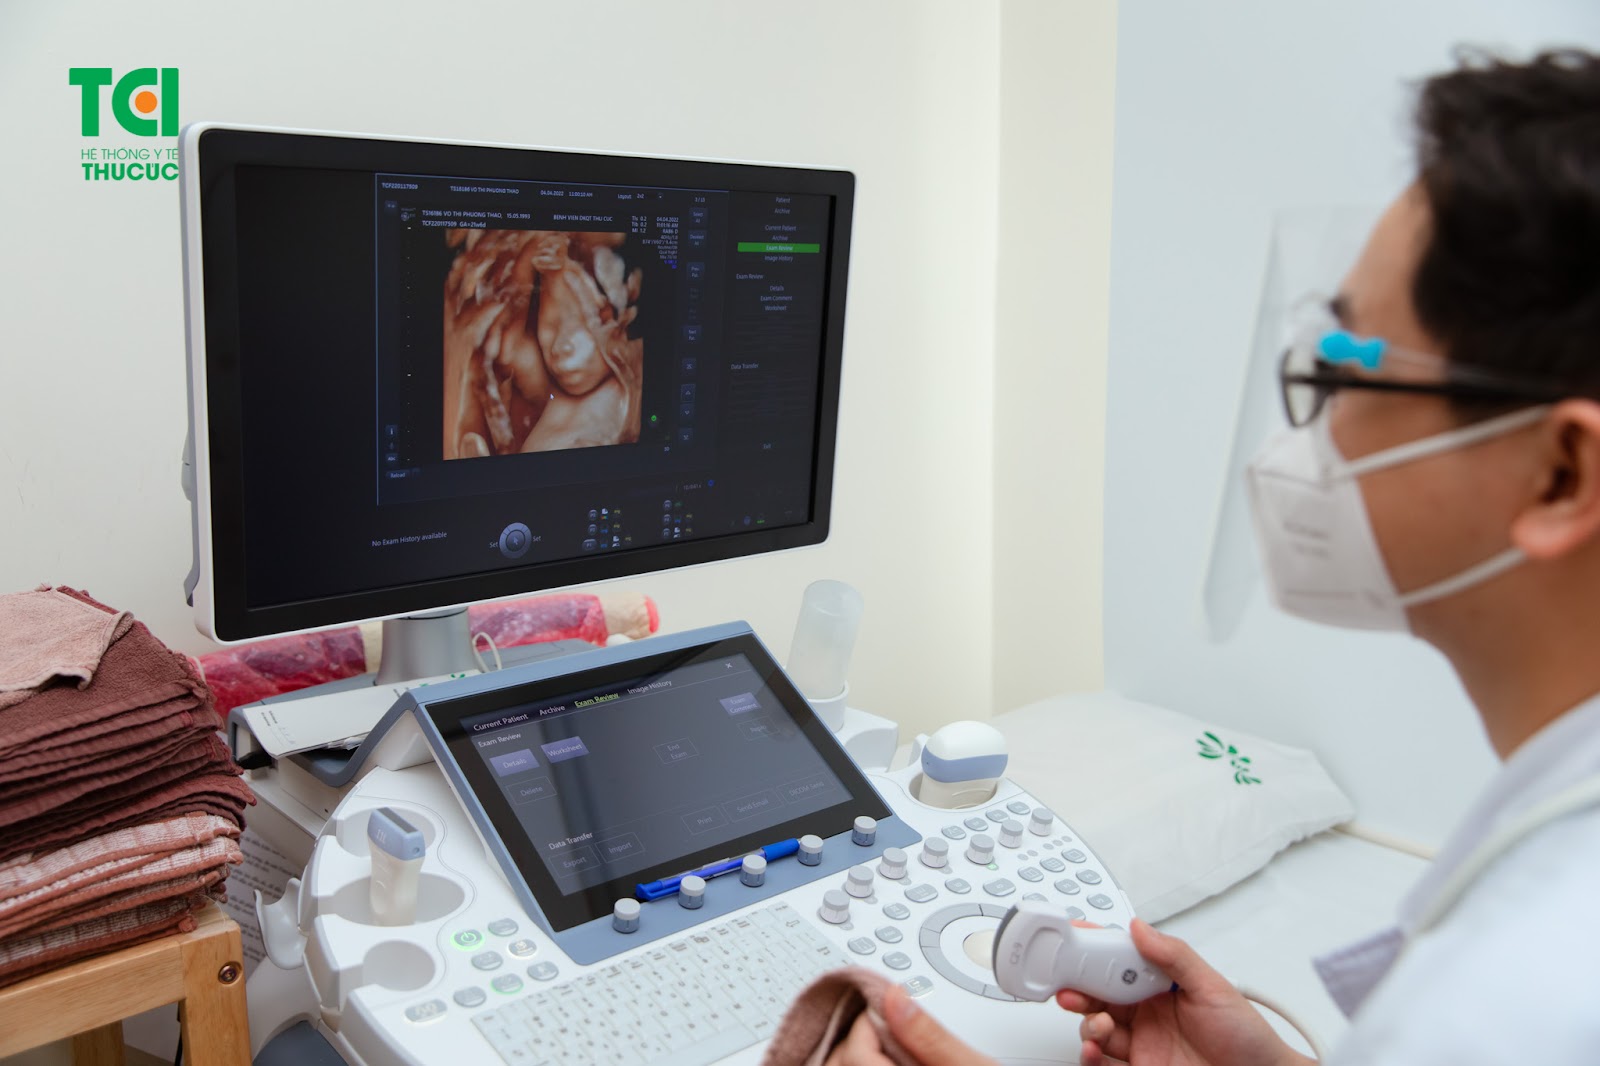 Siêu âm 5D là phương pháp siêu âm thai hiện đại nhất, giúp nhìn rõ hình ảnh thai nhi